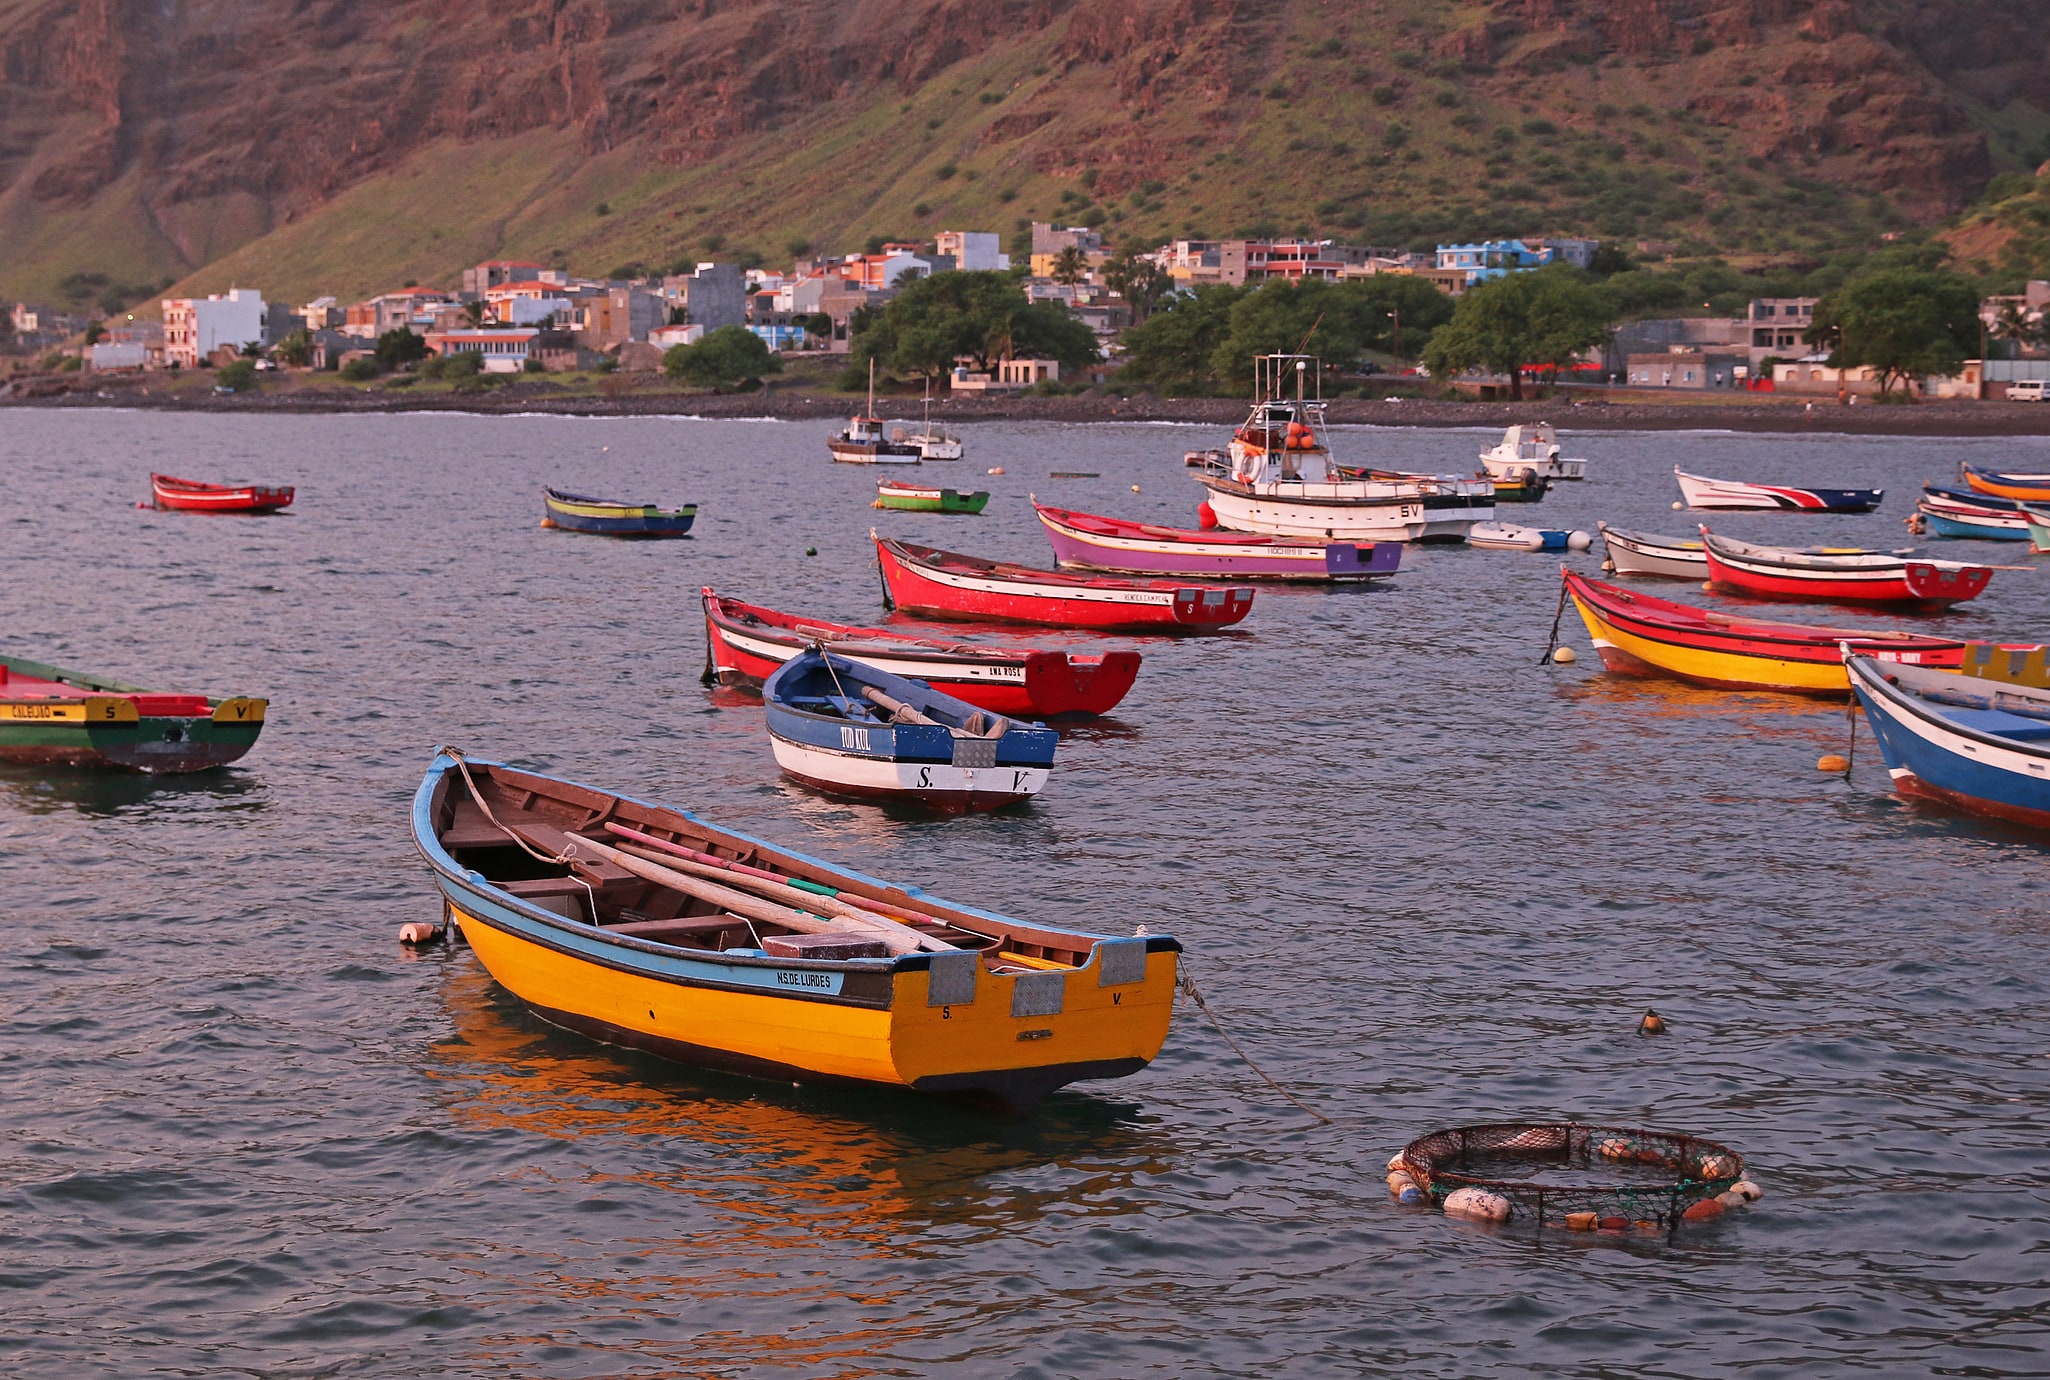 São Nicolau, Cape Verde